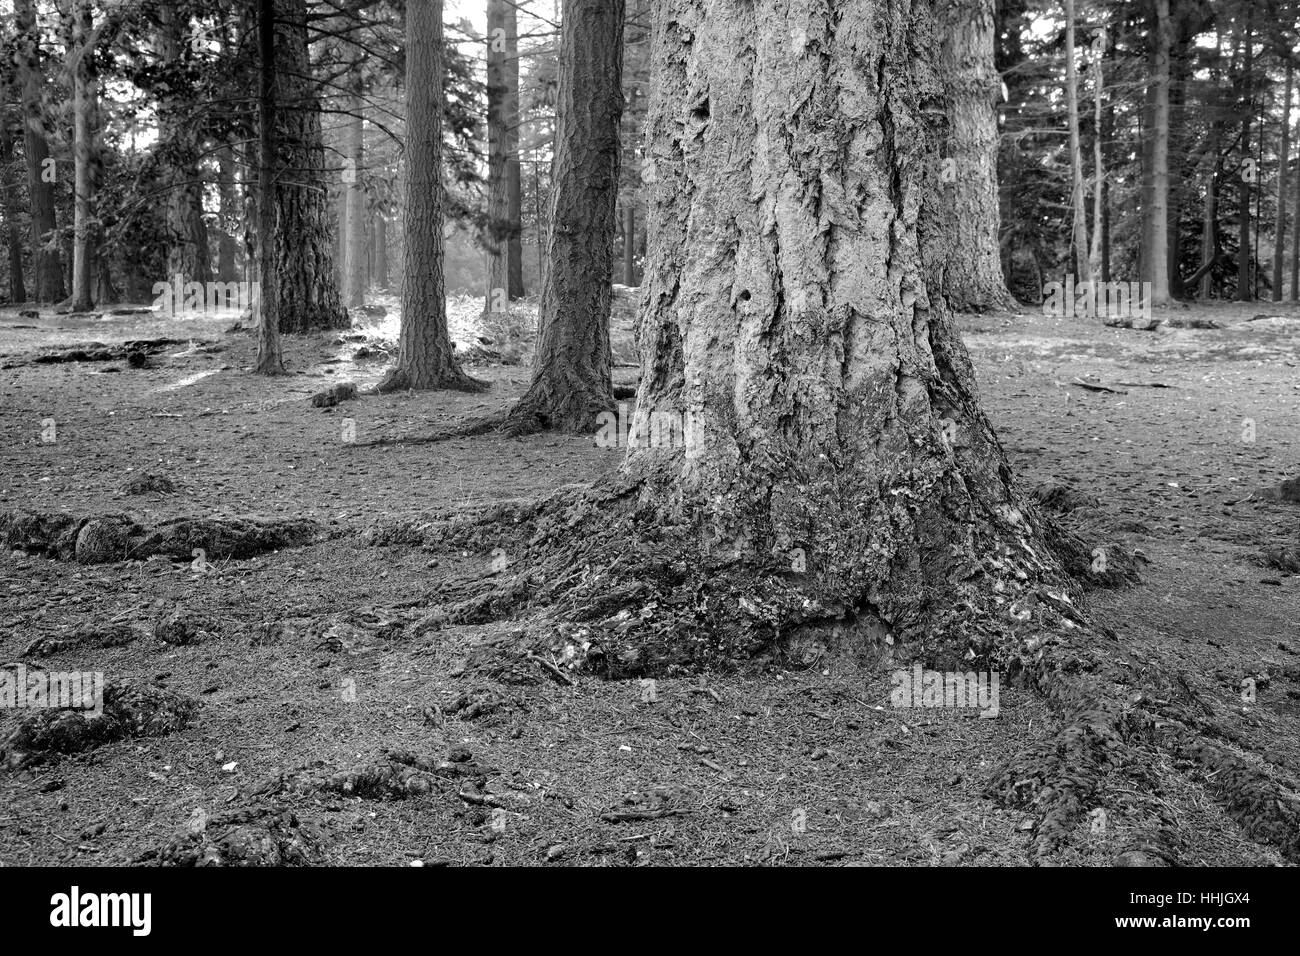 Les arbres forestiers et de fougères, Blanc Moor, Parc National de New Forest, Hampshire County ; Angleterre ; la Grande-Bretagne, Royaume-Uni Banque D'Images